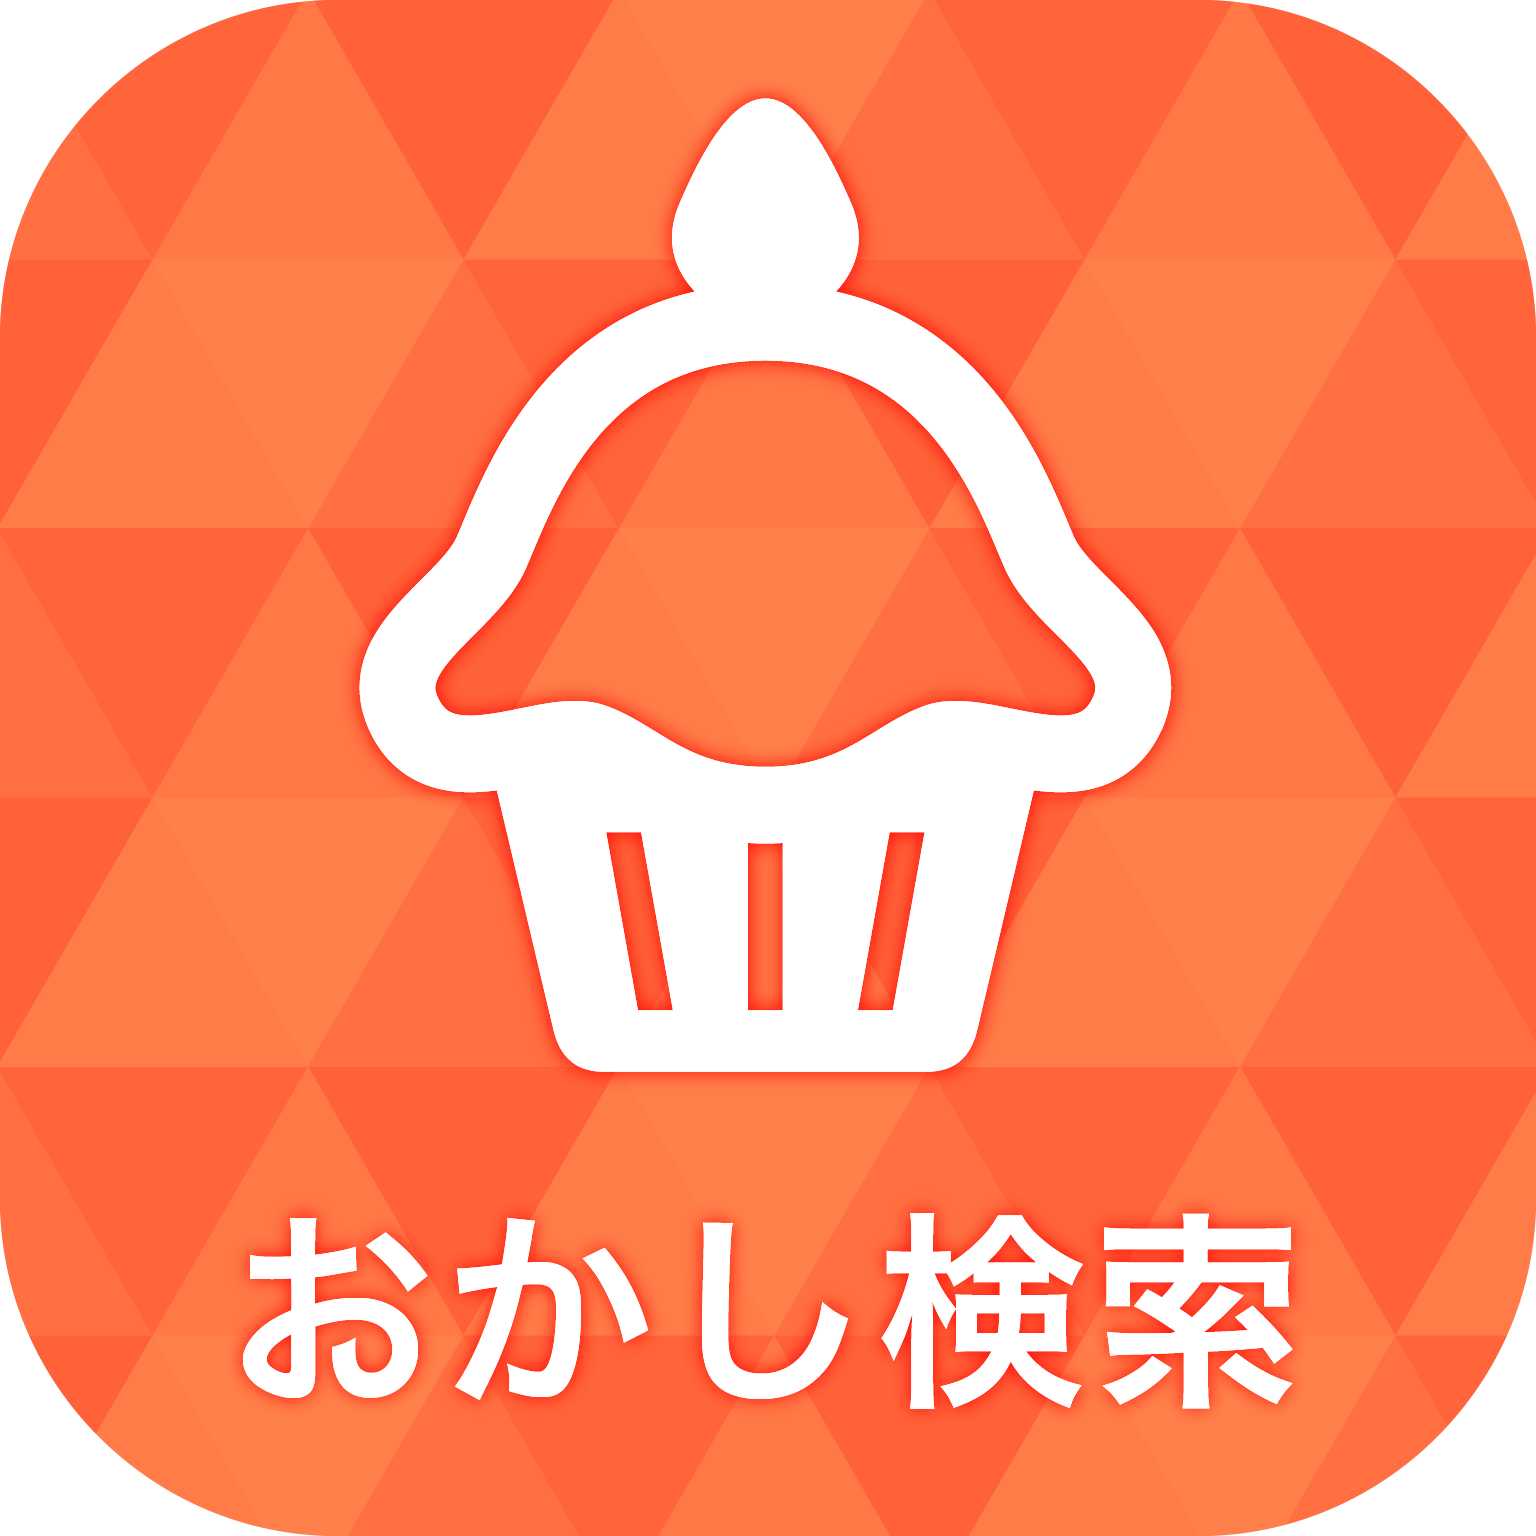 お菓子検索アプリ